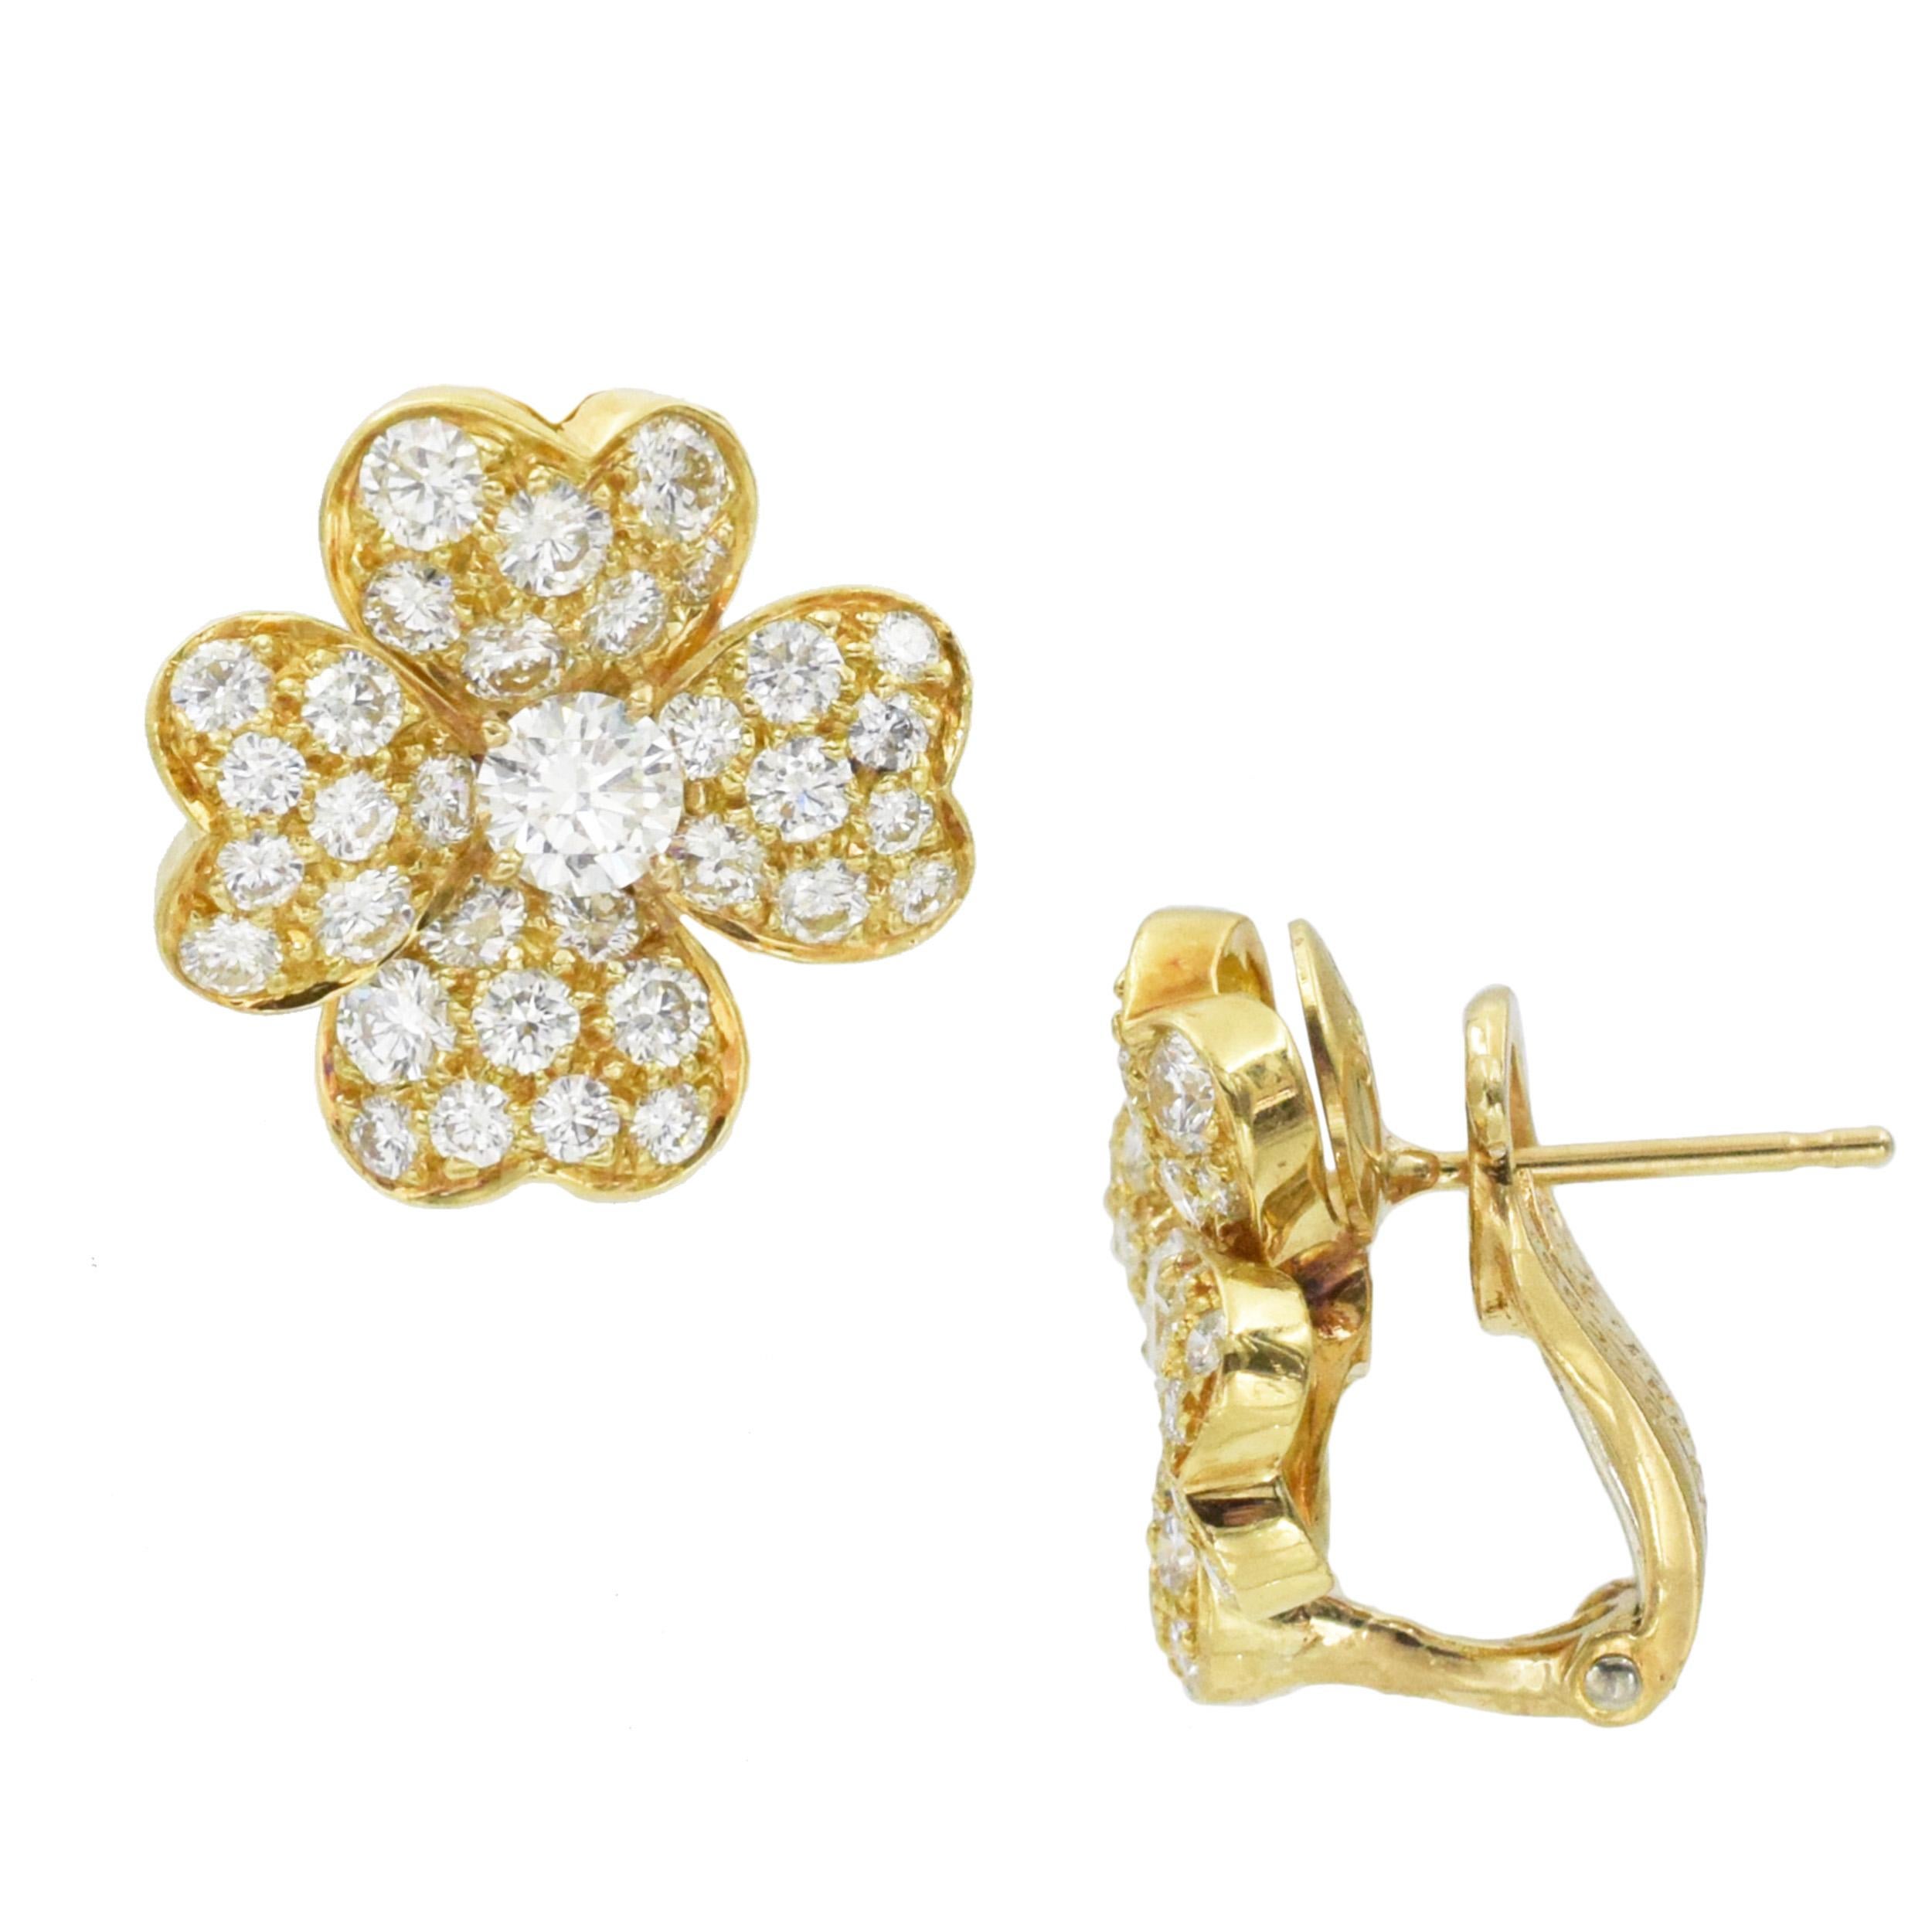 Artist Van Cleef & Arpels 'Cosmos' Diamond and Gold Earrings